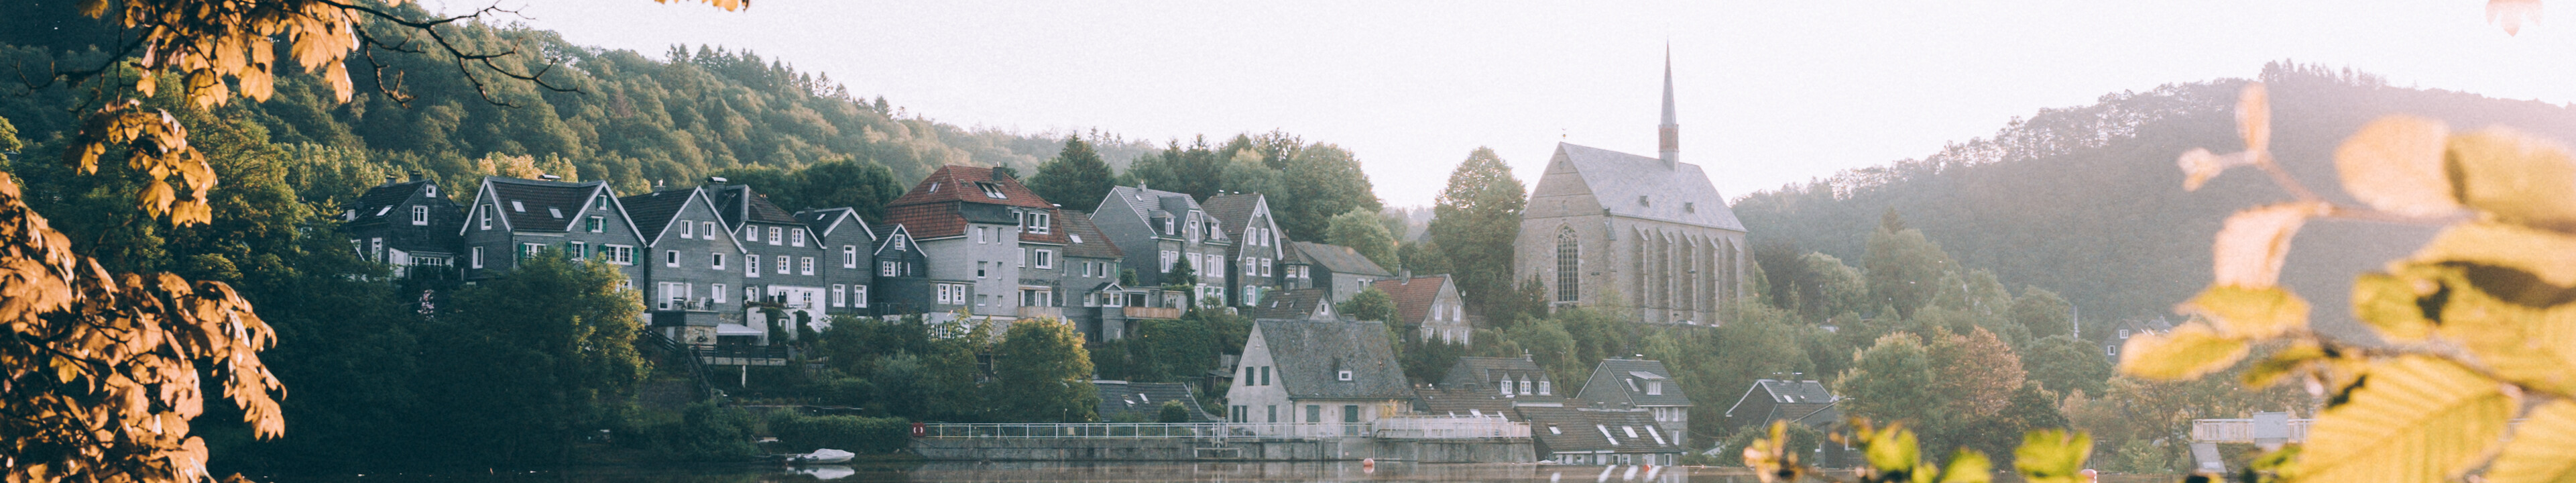 Blick durch die Blätter über den Beyenburger Stausee, in dem sich die Fachwerkhäuser vom anderen Ufer spiegeln.  